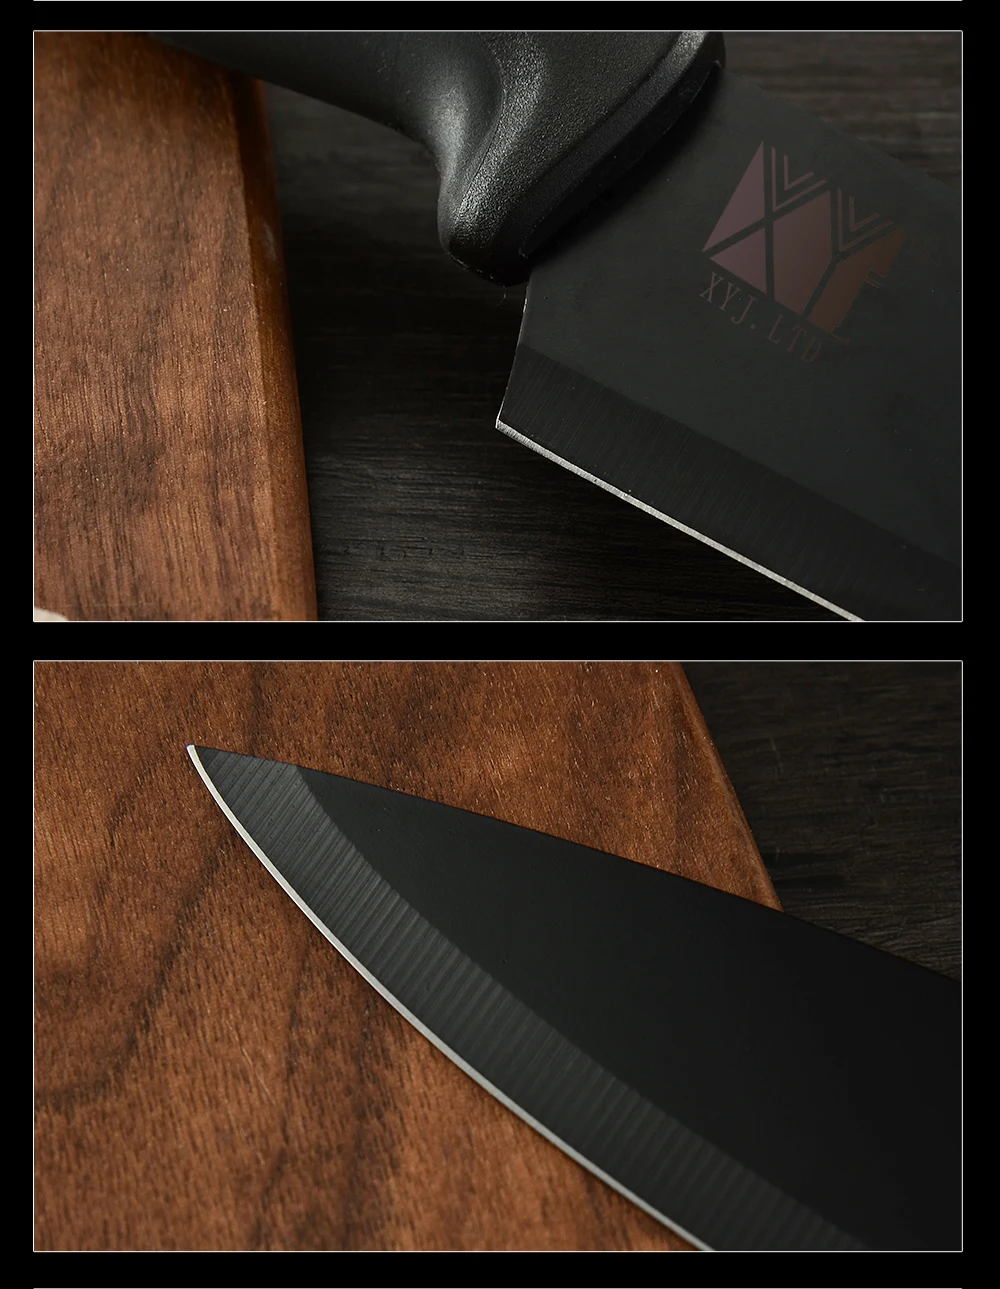 XYj 6 шт., кухонный нож из нержавеющей стали, крышка, 8 дюймов, нож для нарезки хлеба, 7 дюймов, сантоку, 5 дюймов, универсальный нож, 3,5 дюймов, ножи для очистки овощей